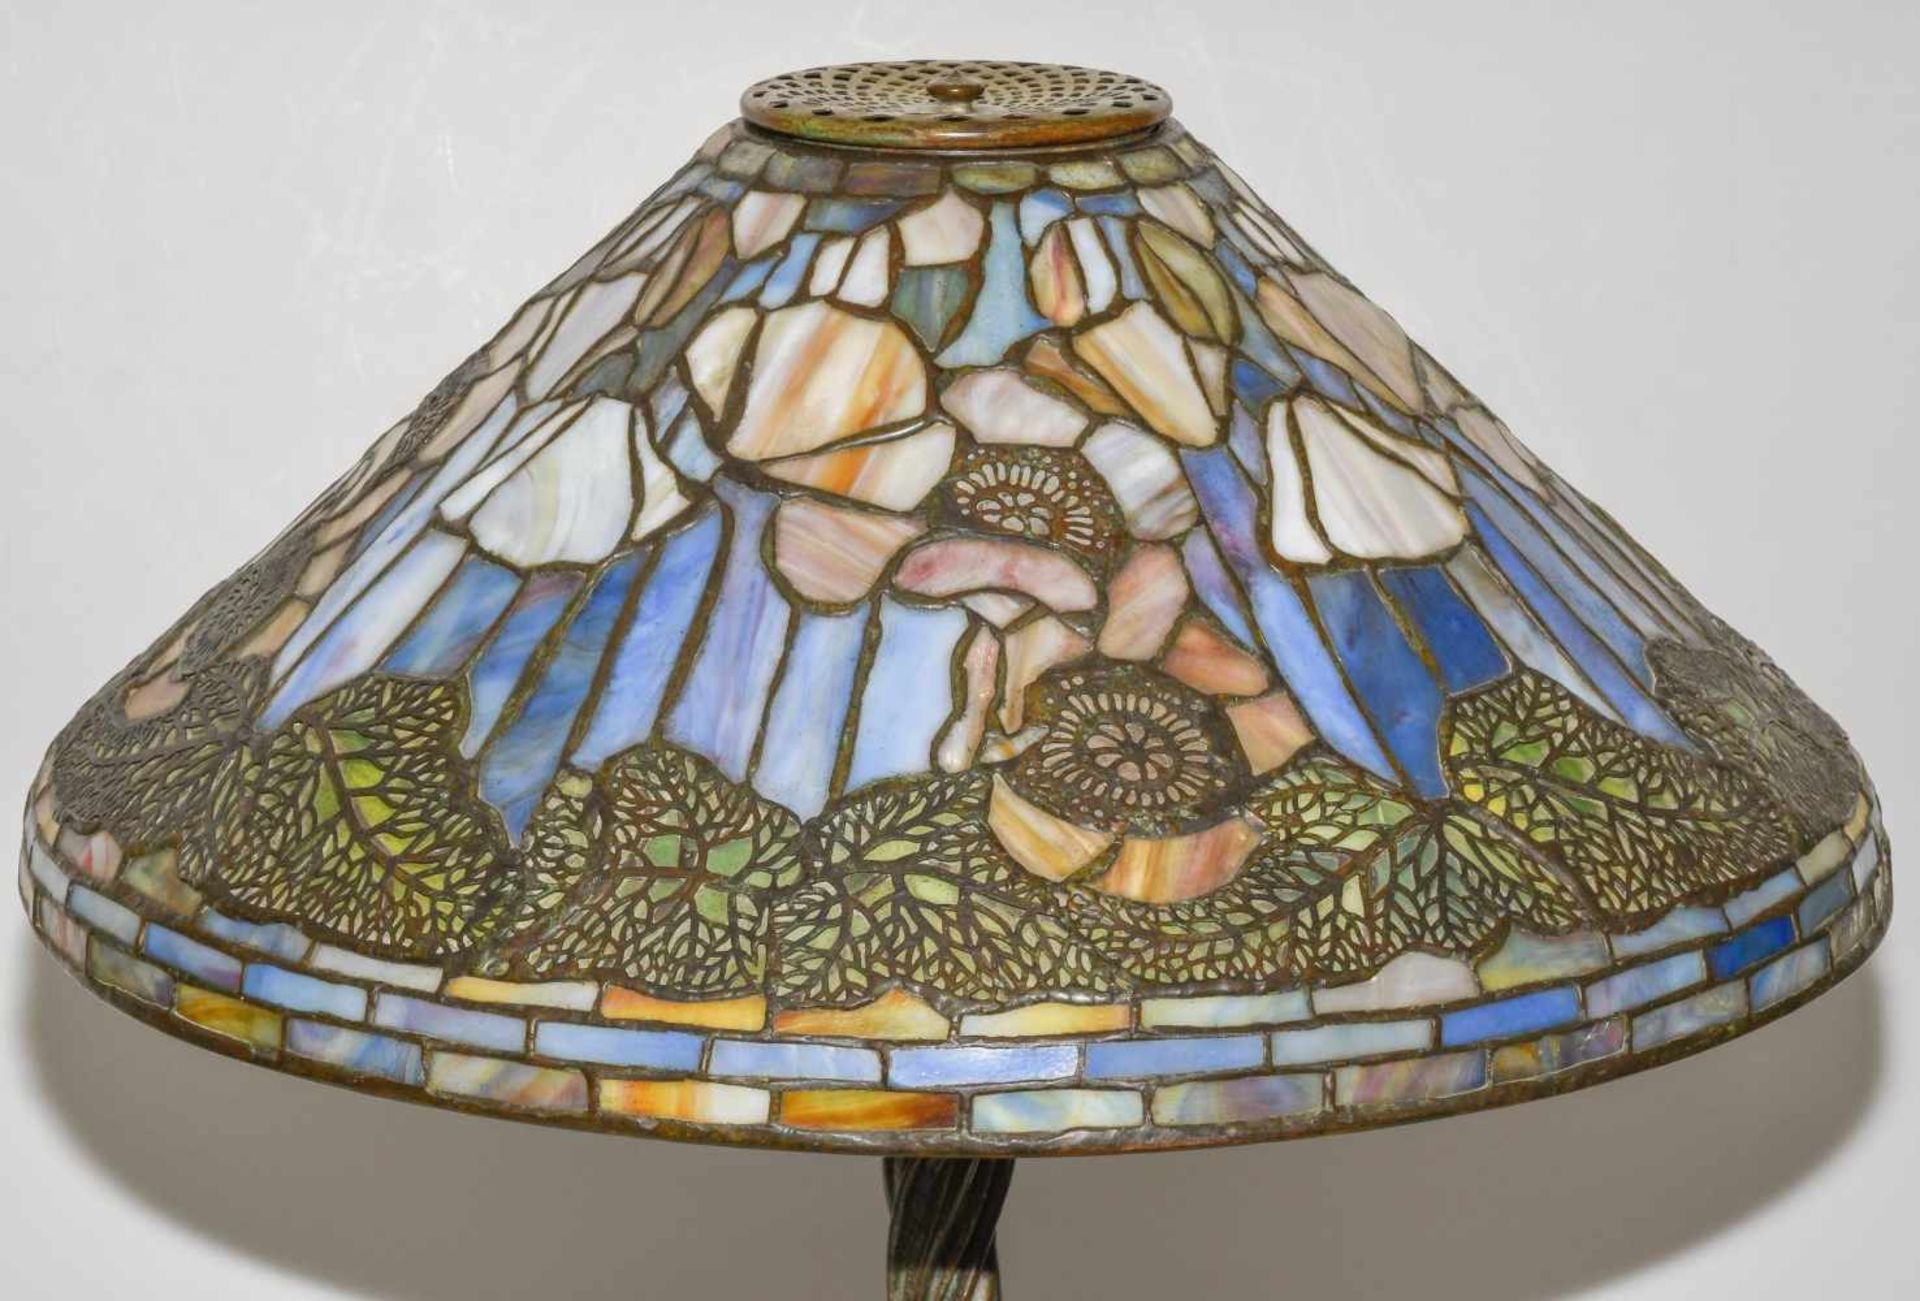 Tiffany Studios New YorkTischlampe "Poppy". Schirm aus "leaded Glass", weisser Mohn mit Blättern, - Image 13 of 24